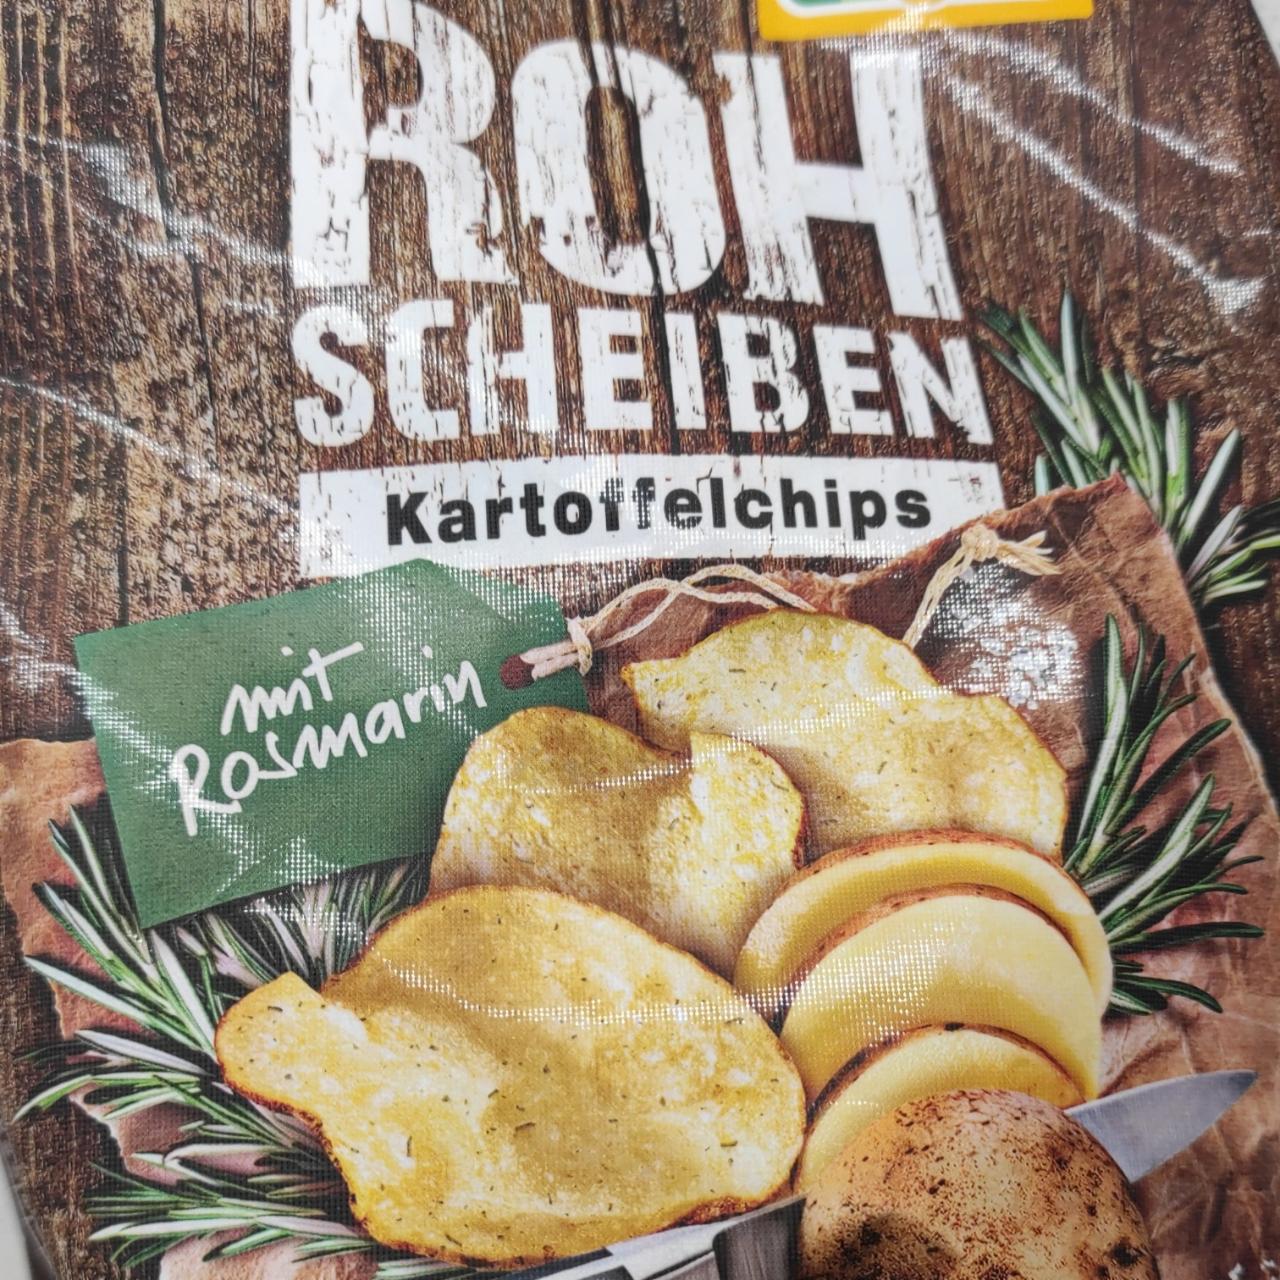 Fotografie - Rohscheiben Kartoffelnchips mit Rosmarin Lorenz